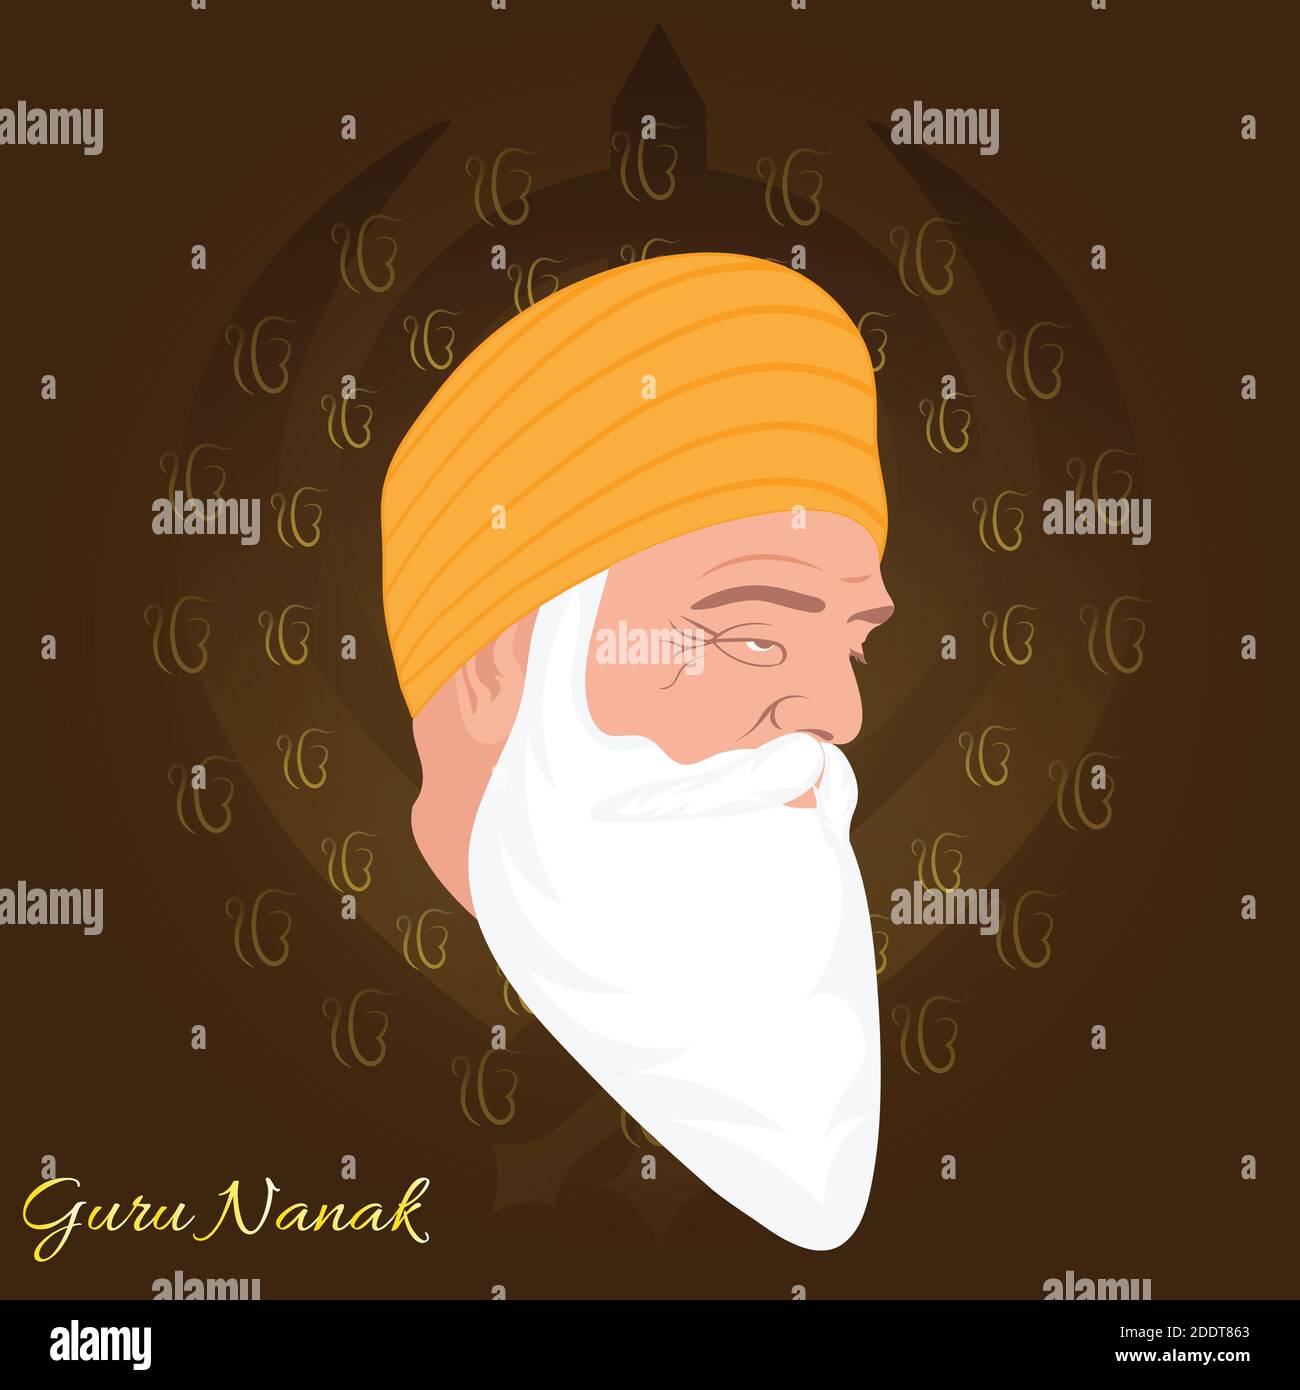 Illustrazione vettoriale per Guru Nanak Jayanti l'anniversario di nascita di Guru Nanak dev ji. Disegno astratto. Illustrazione Vettoriale